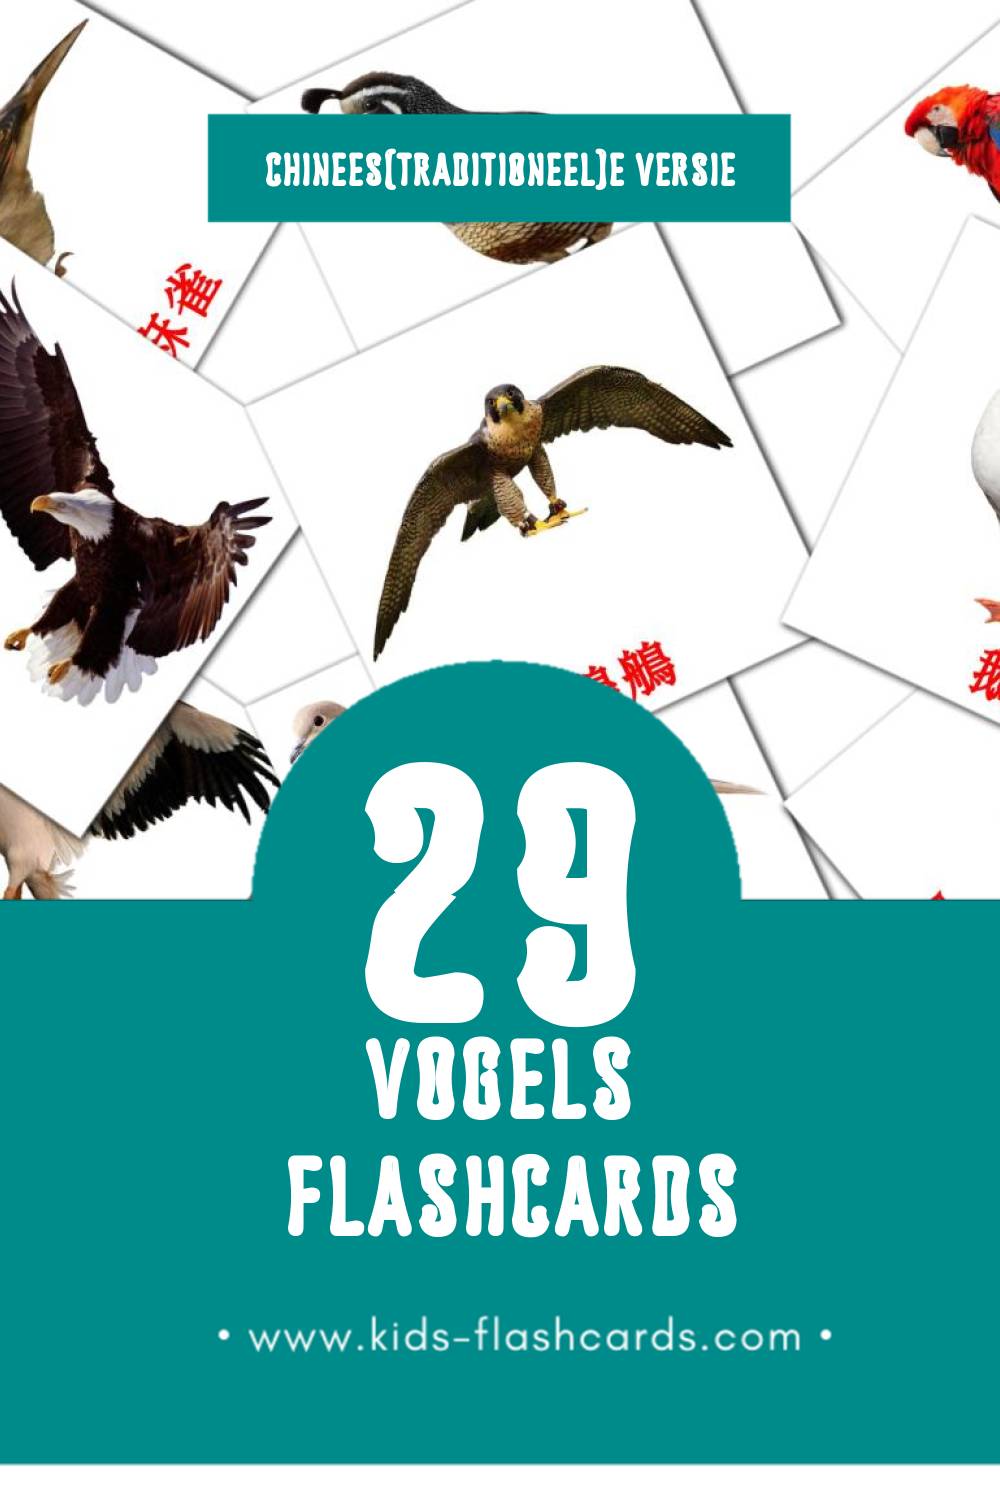 Visuele 鳥兒 Flashcards voor Kleuters (29 kaarten in het Chinees(traditioneel))